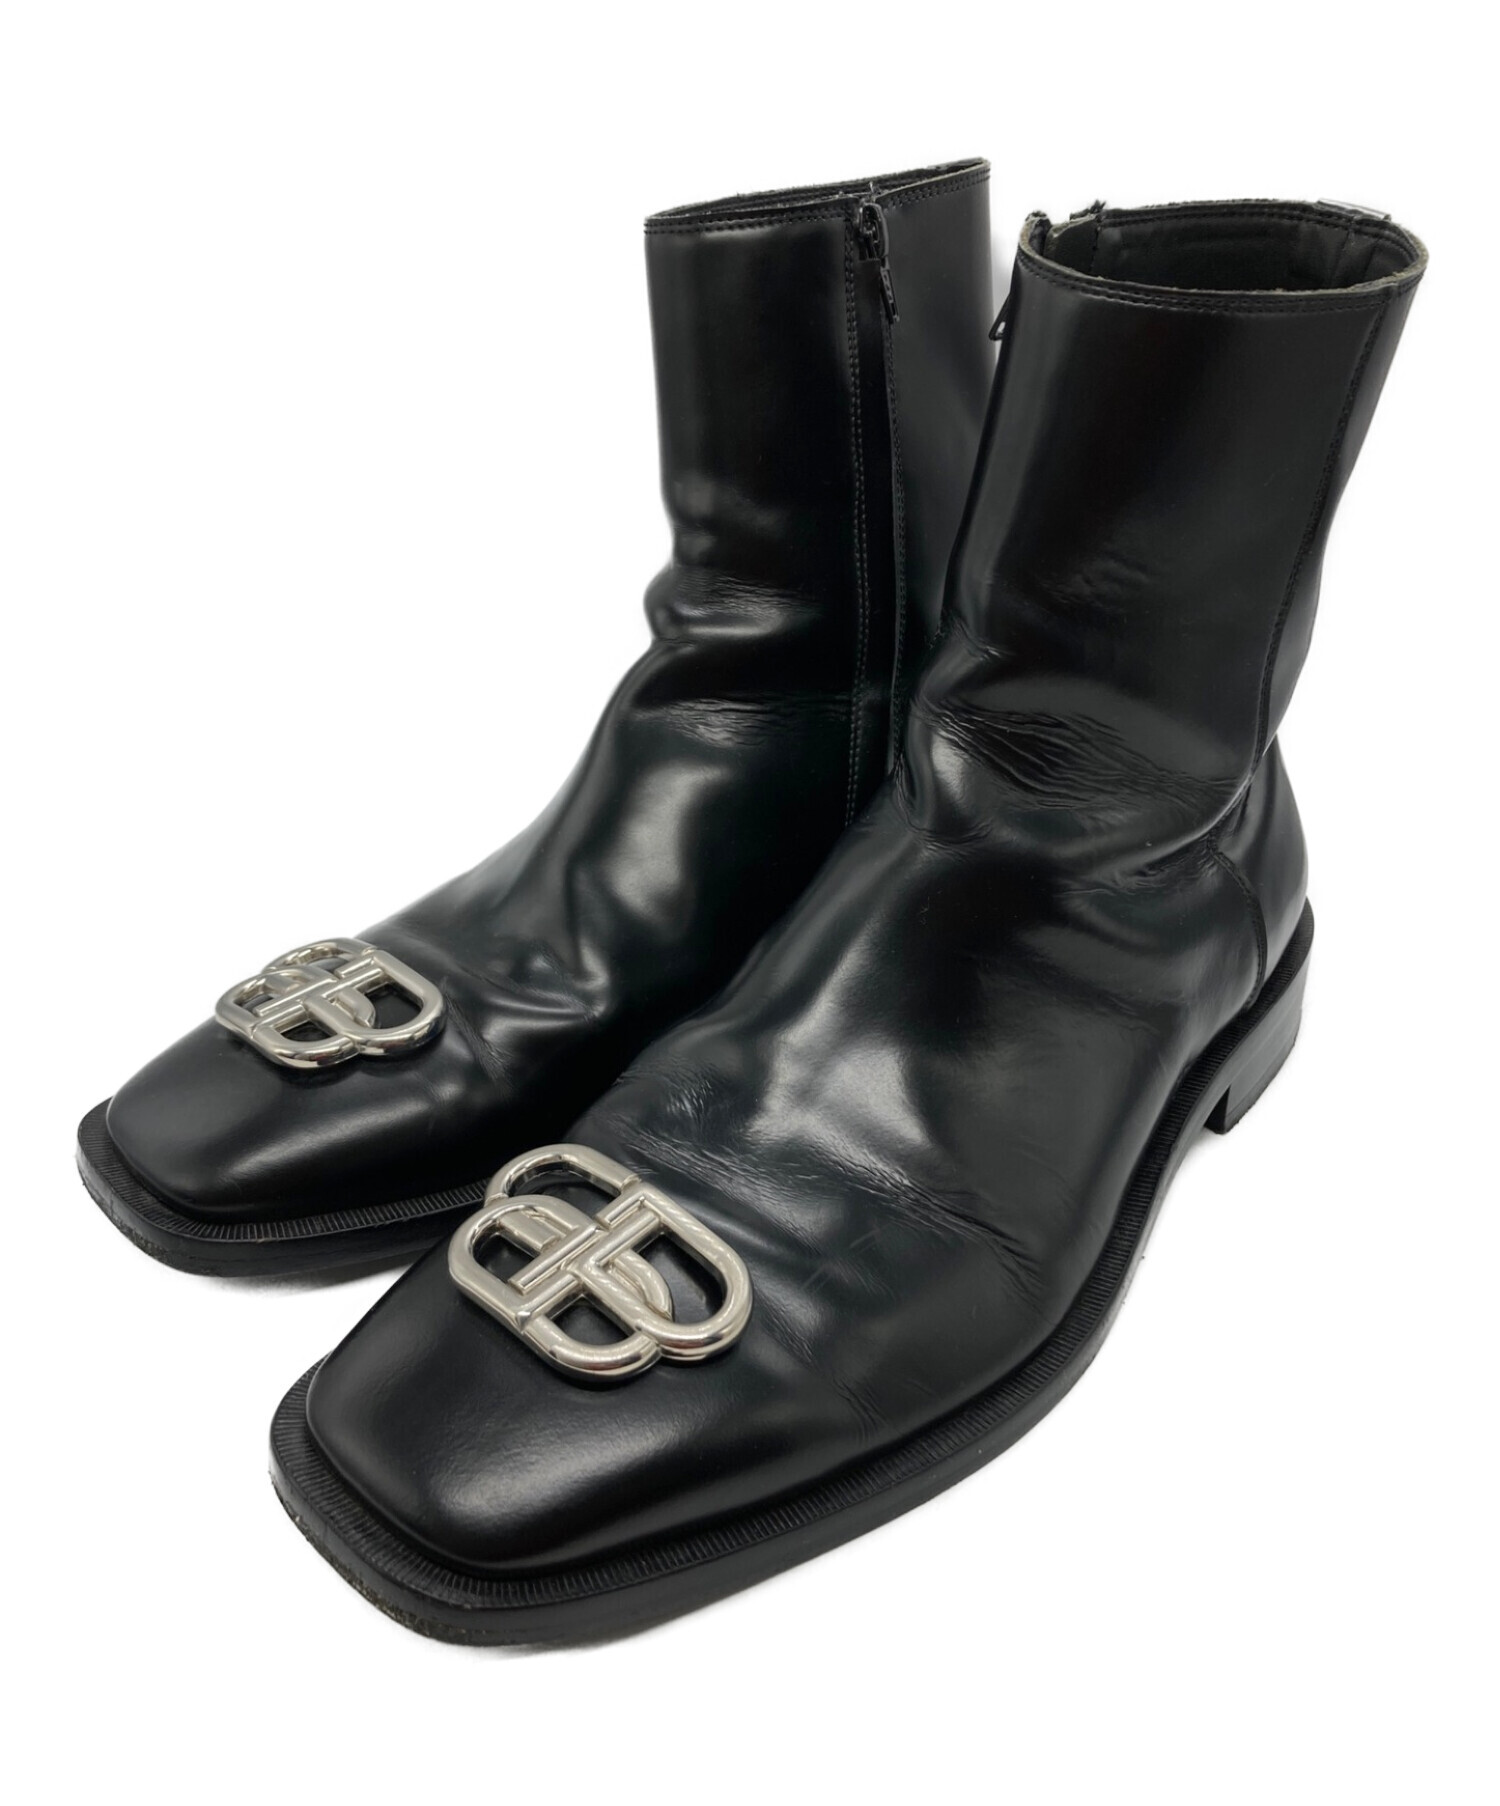 BALENCIAGA Rim BB Boots型番579665 - ブーツ